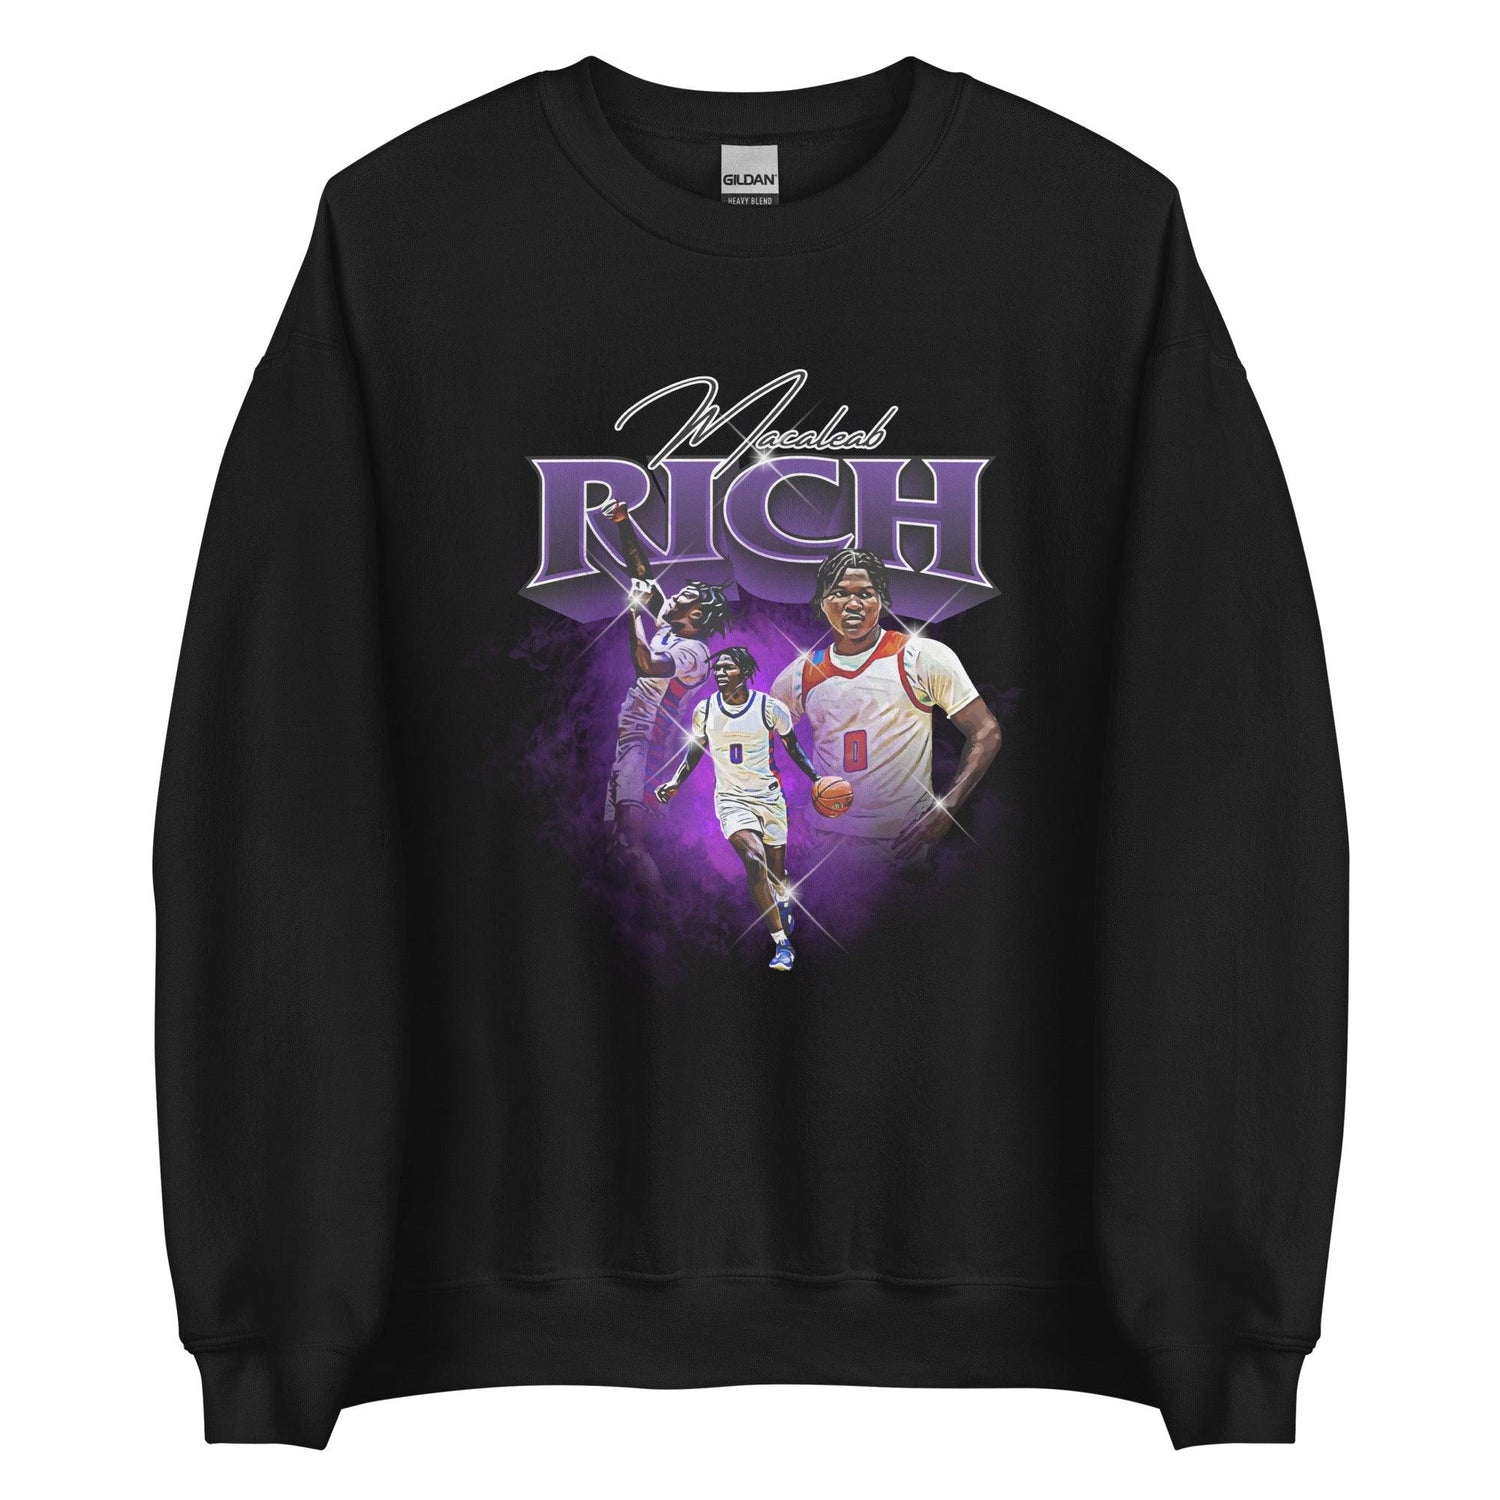 Macaleab Rich "Vintage" Sweatshirt - Fan Arch